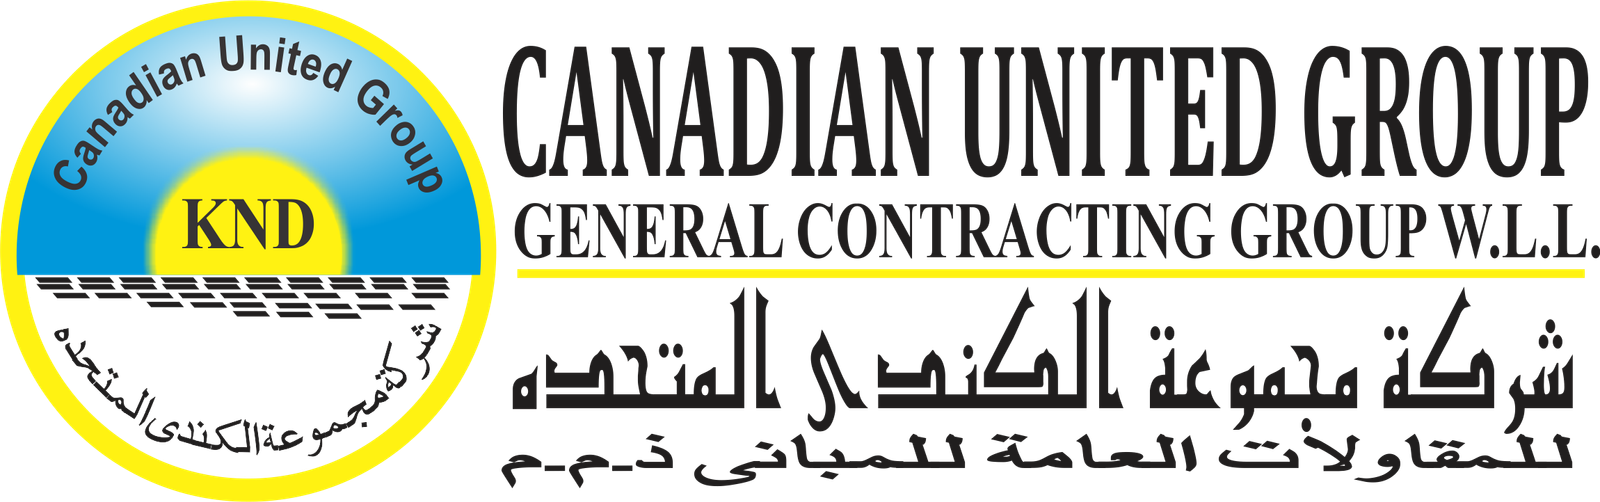 Canadian United Group Logo